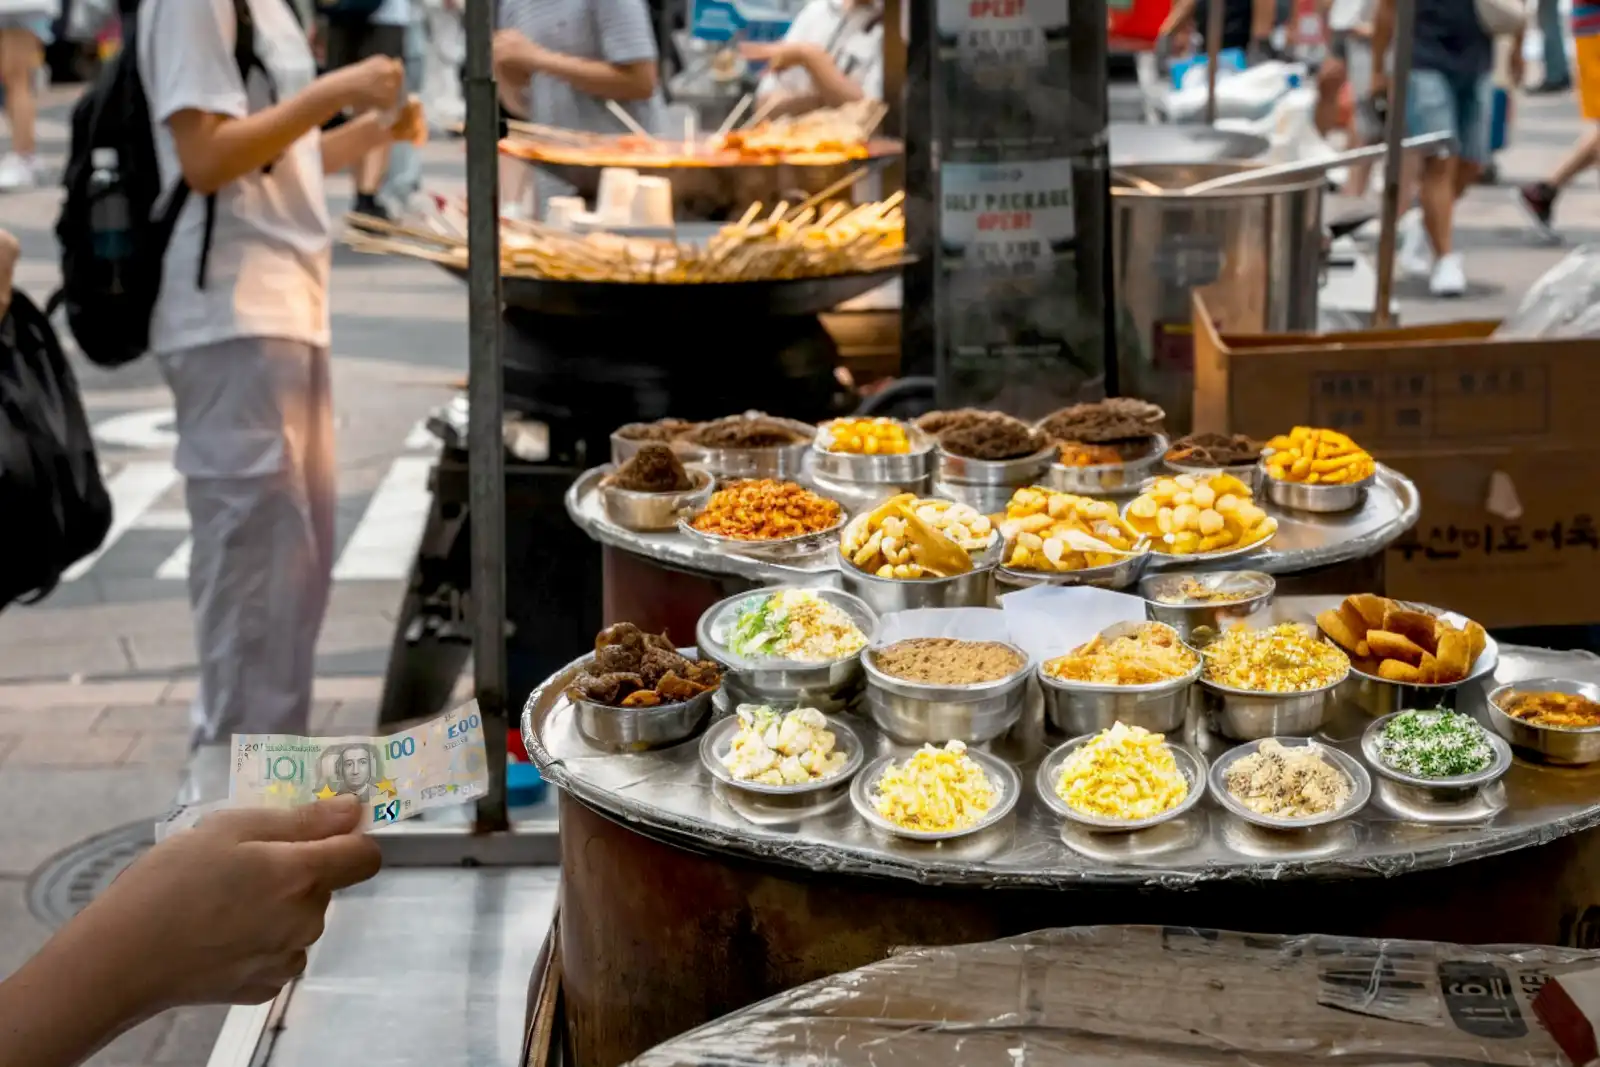 Ariccia pedonale 3 giorni per lo Street Food: in 5 grandi zone del centro